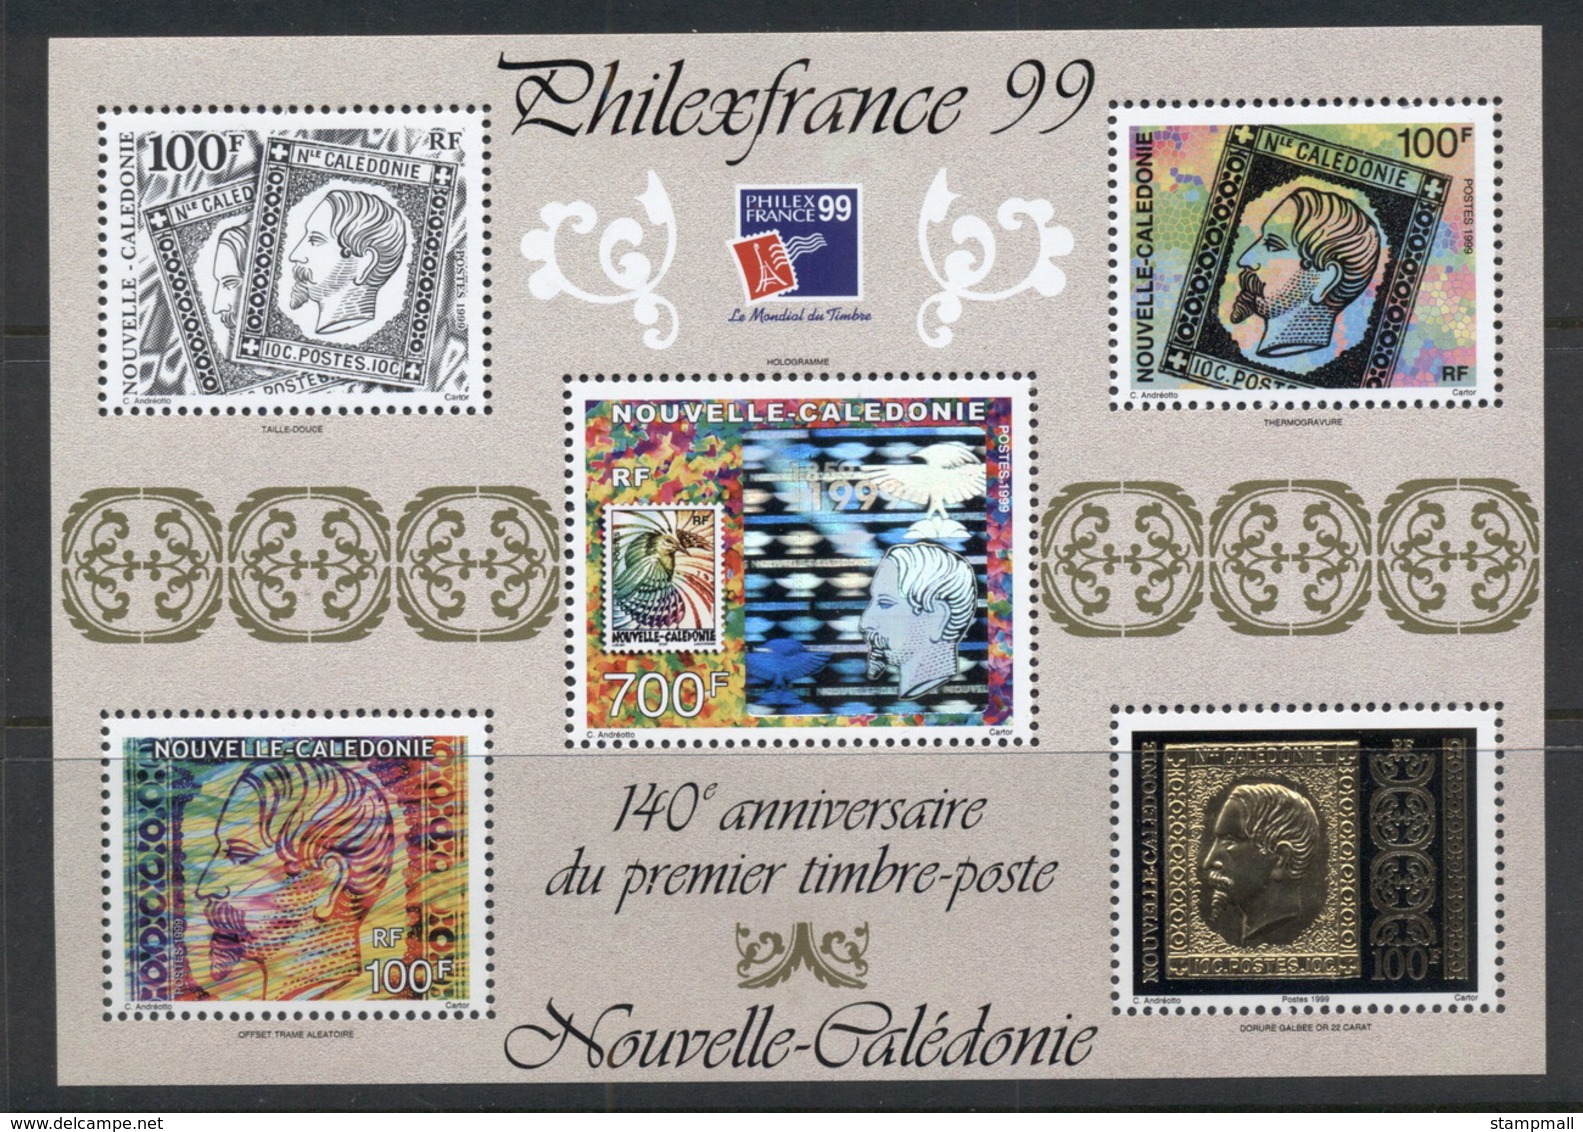 New Caledonia 1999 Stamp Anniversary MS MUH - Unused Stamps